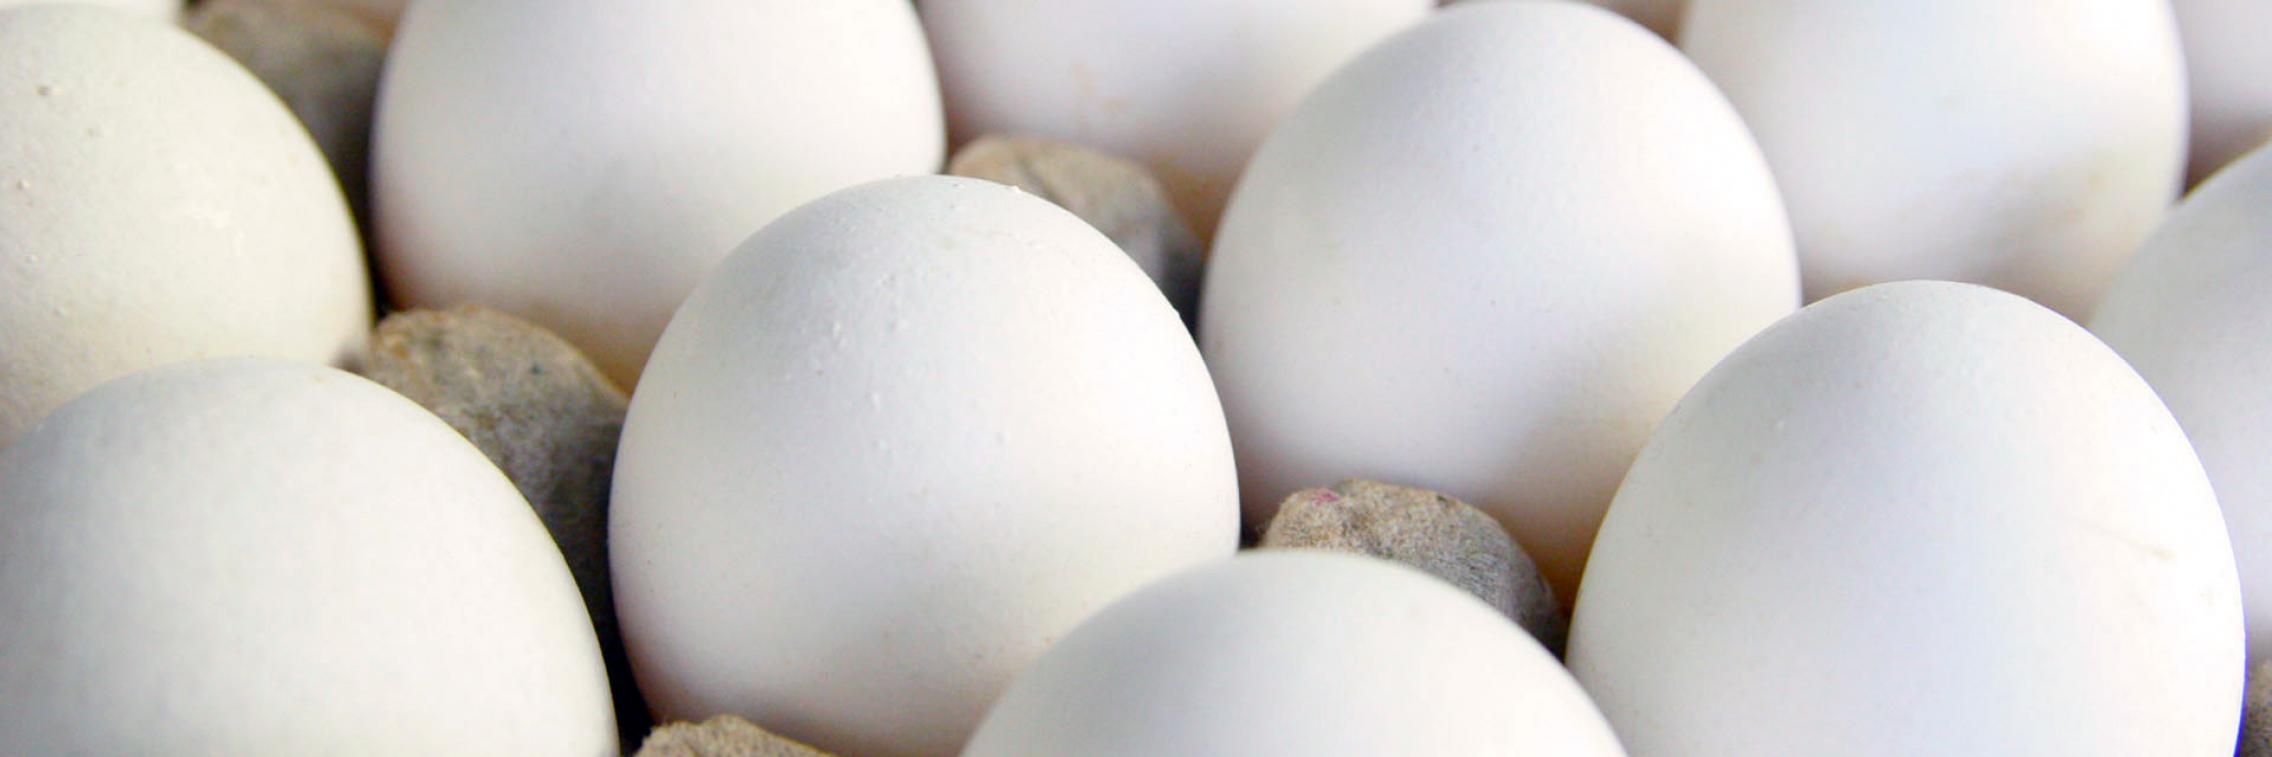 Cracking the secret of omega-3 enriched eggs